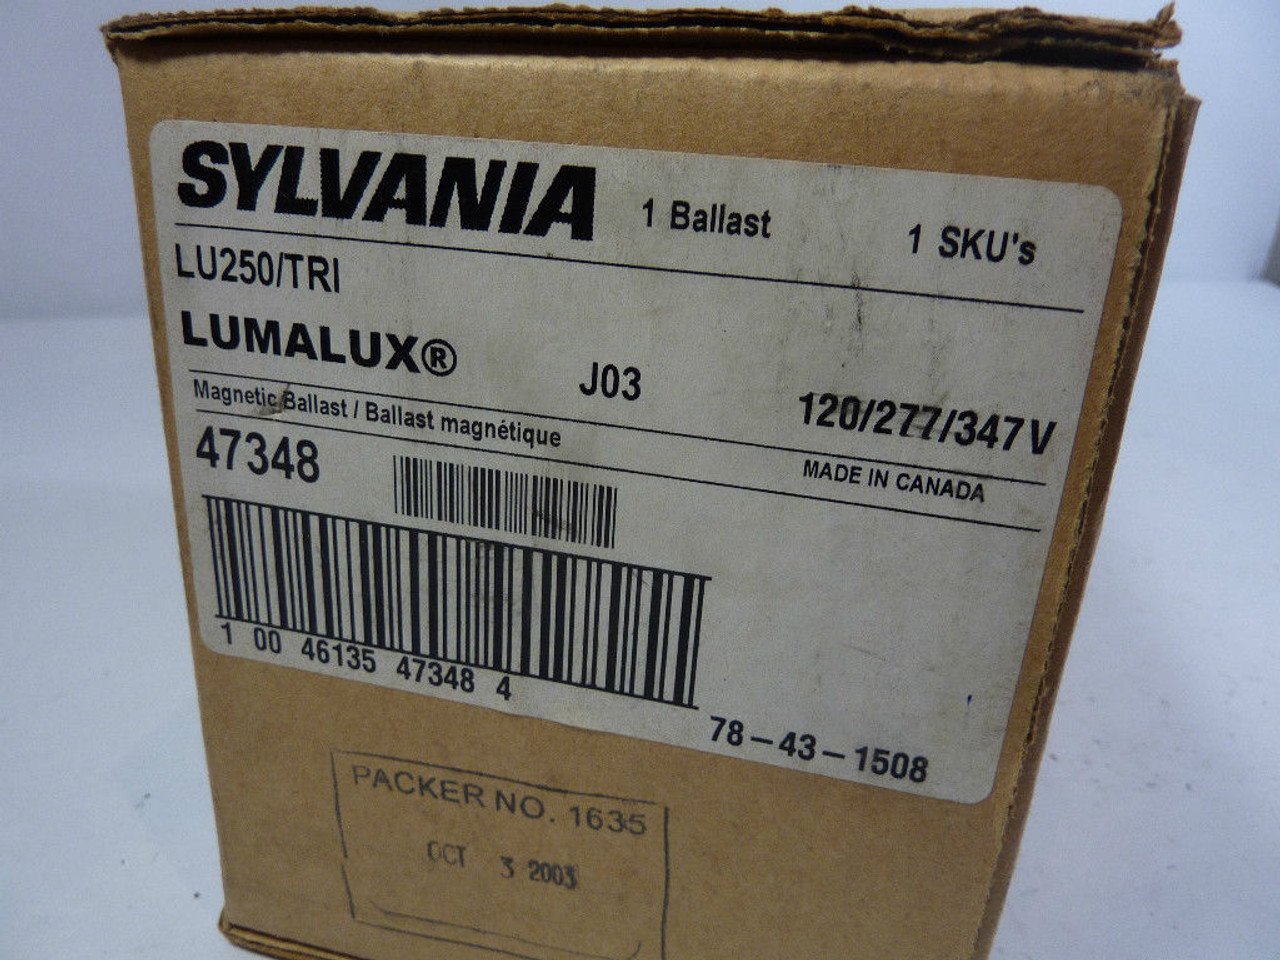 Sylvania LU250/TRI Magnetic Ballast Kit USED